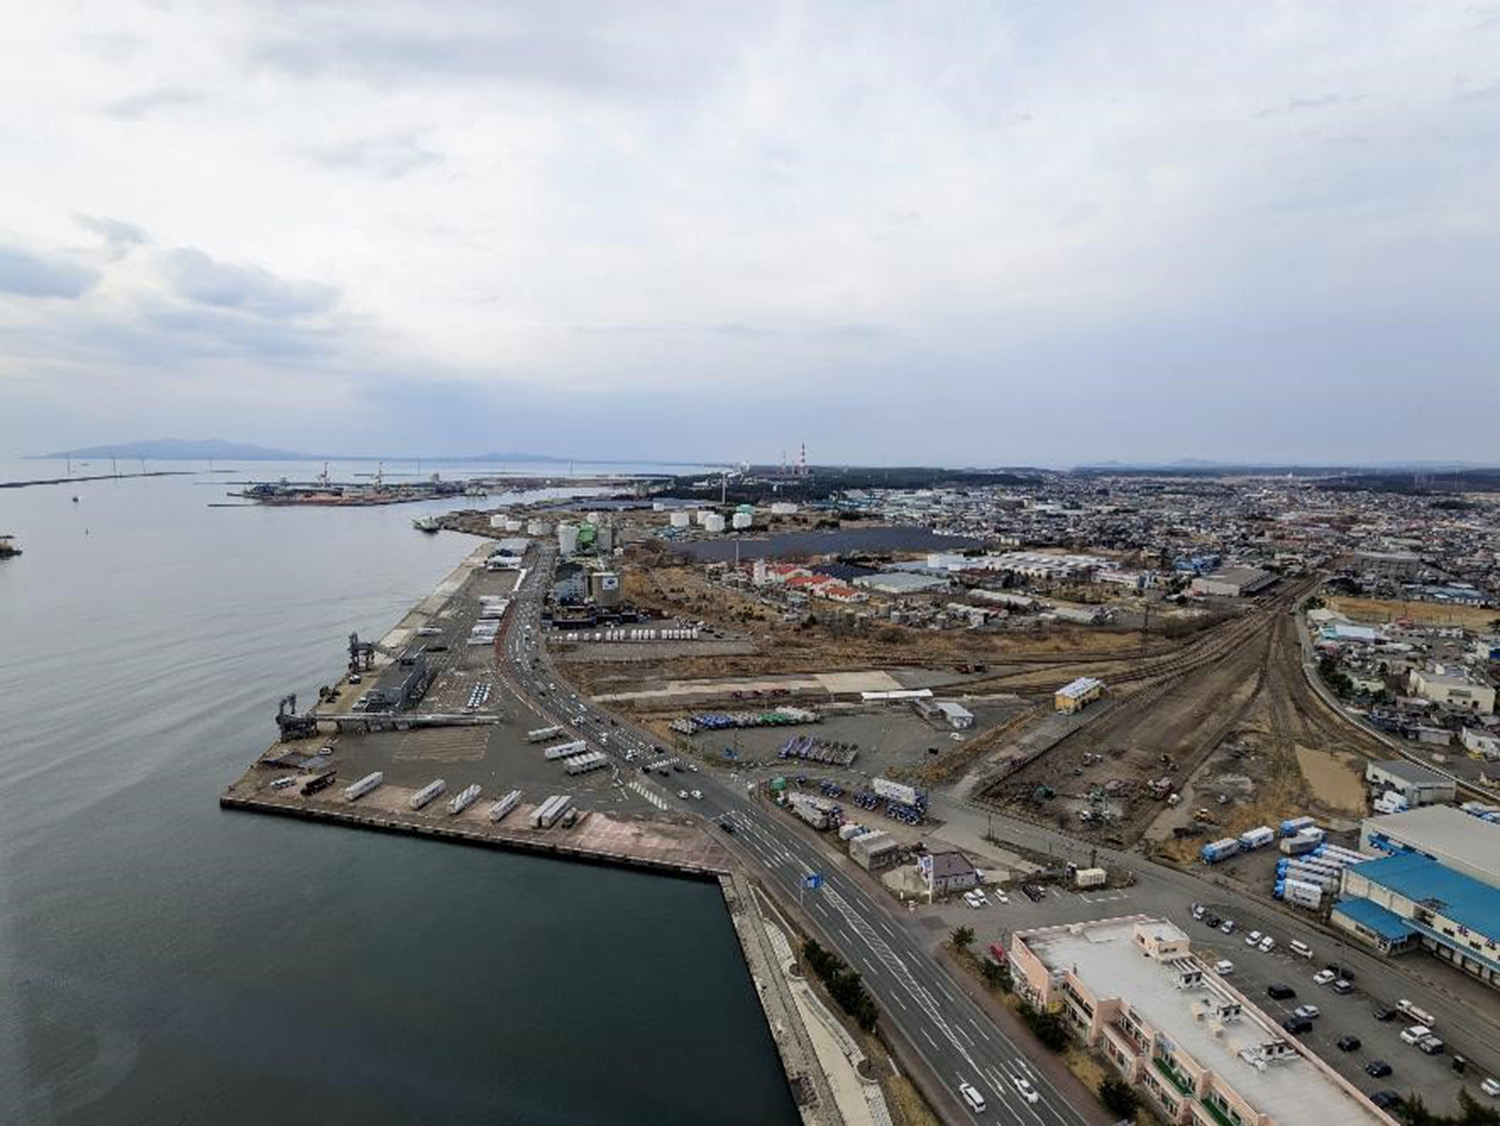 土崎港のポートタワー「セリオン」からの眺め。